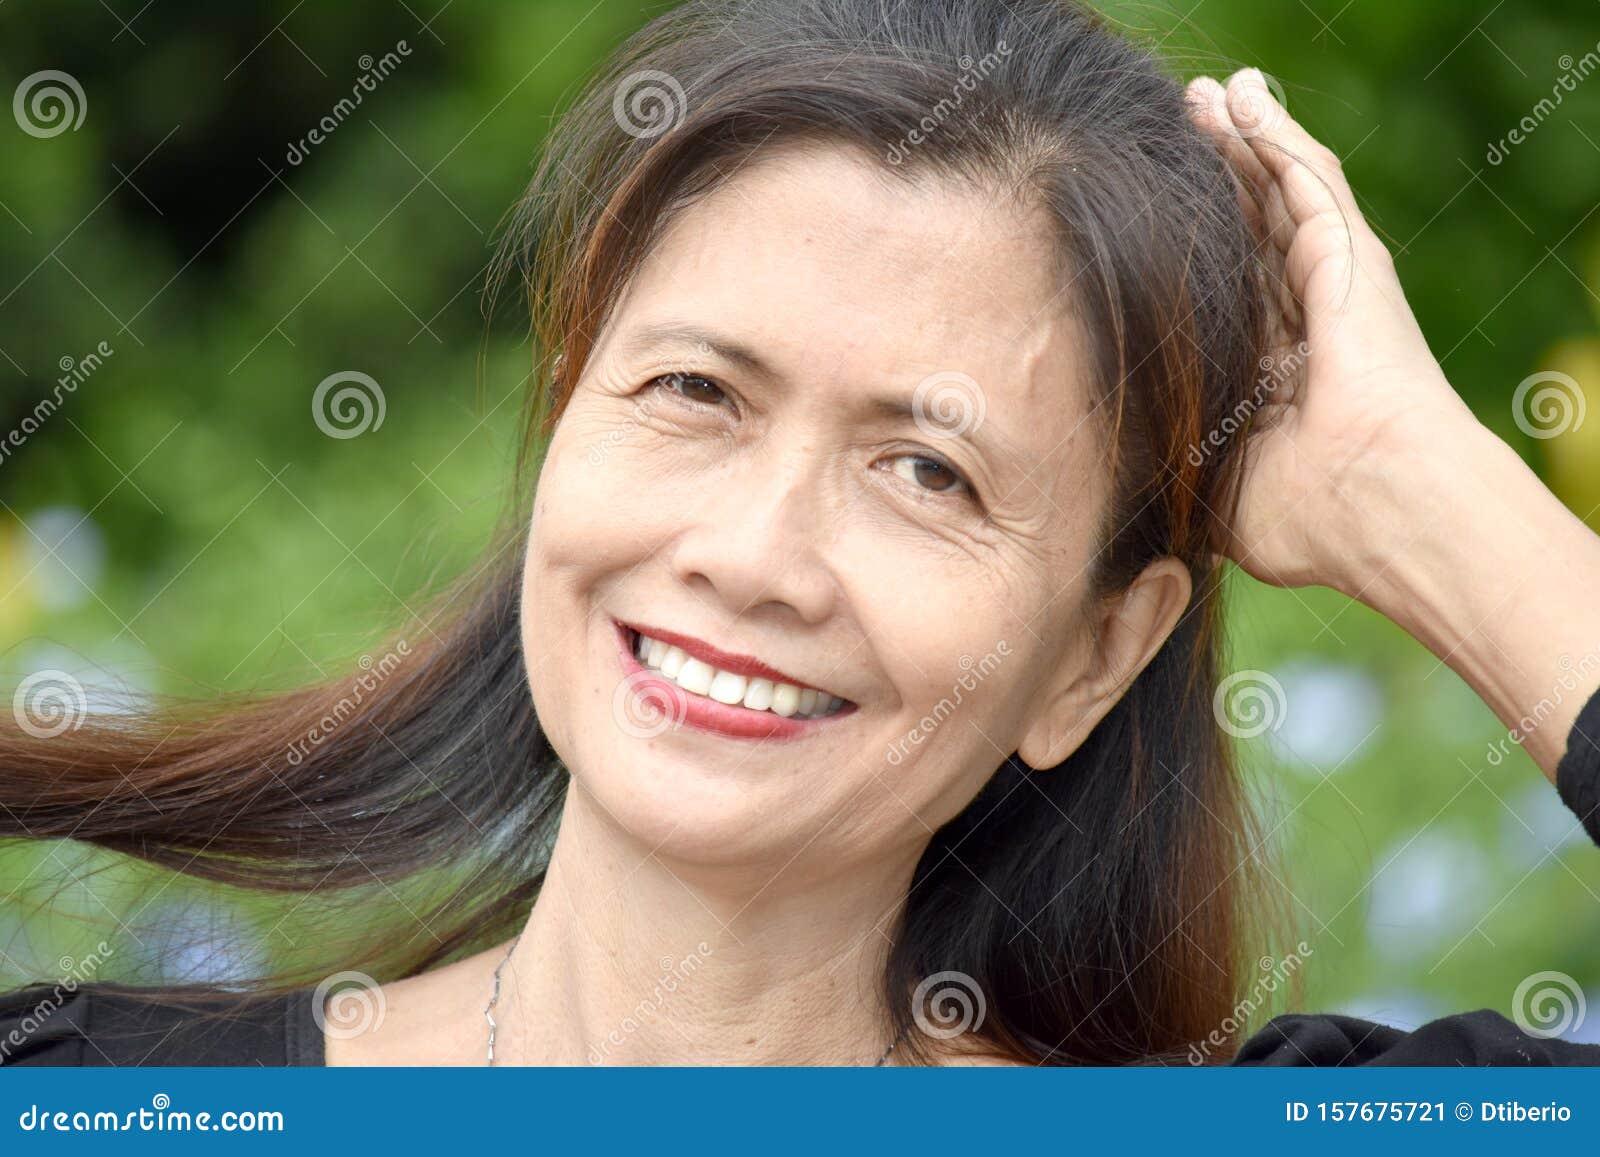 A Retired Filipina Female Senior Smiling Stock Image Image Of